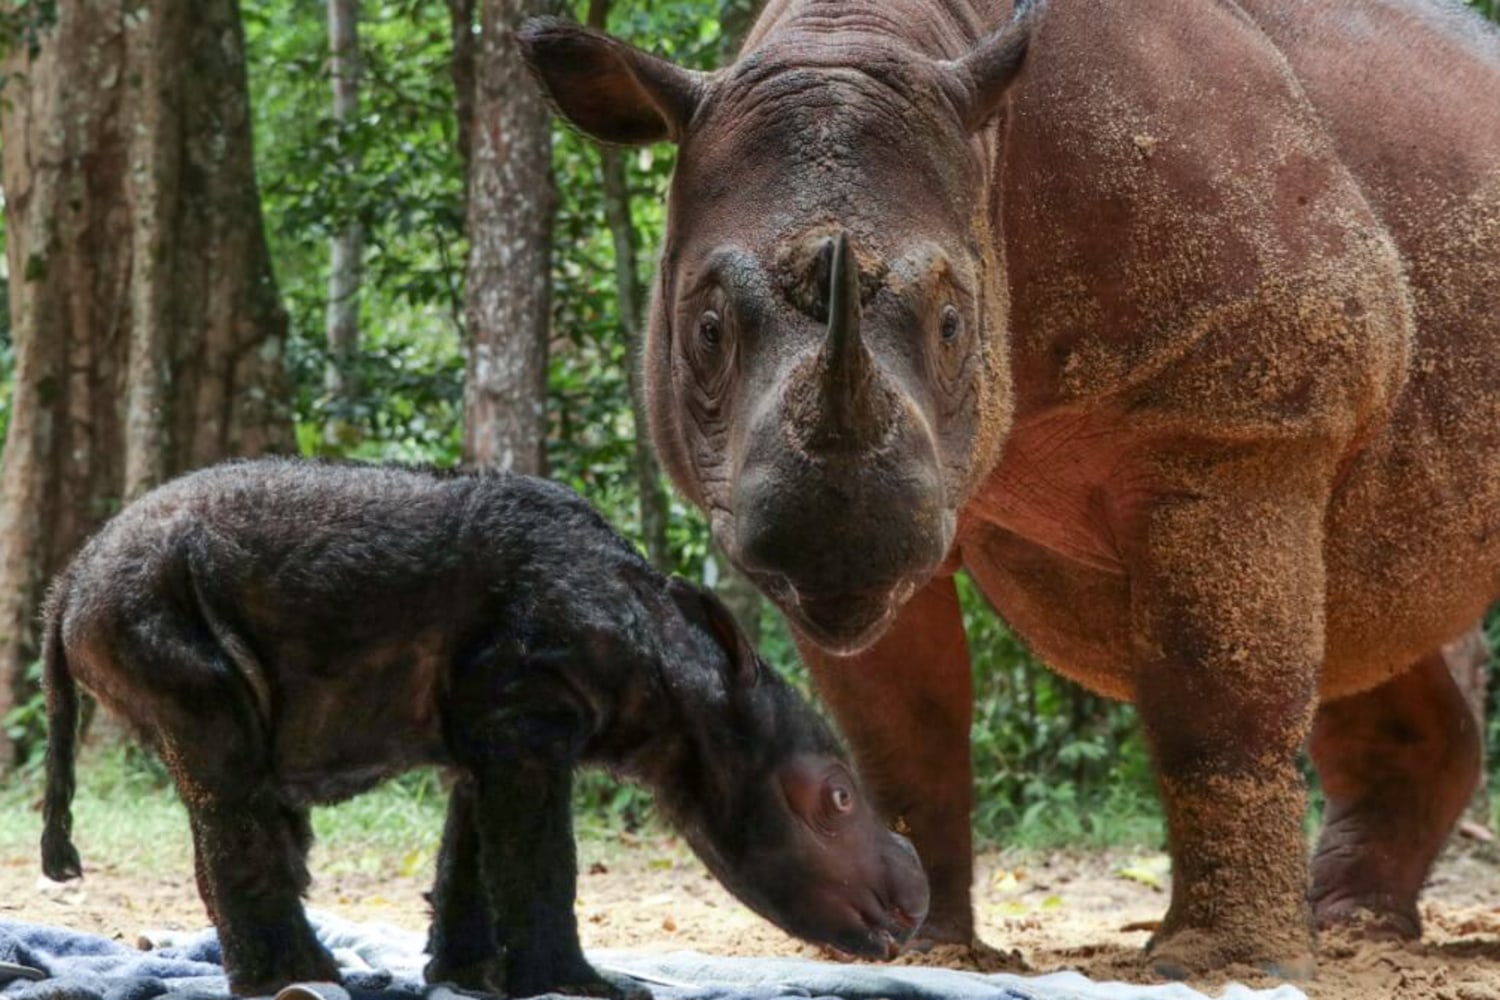 Tê giác Sumatra nguy cấp đã trải qua một quá trình sinh sản hiếm có, tạo ra hy vọng cho sự sống. Hãy đến với chúng tôi để tìm hiểu thêm về sự sinh sản này và những nỗ lực bảo vệ loài tê giác Sumatra này.